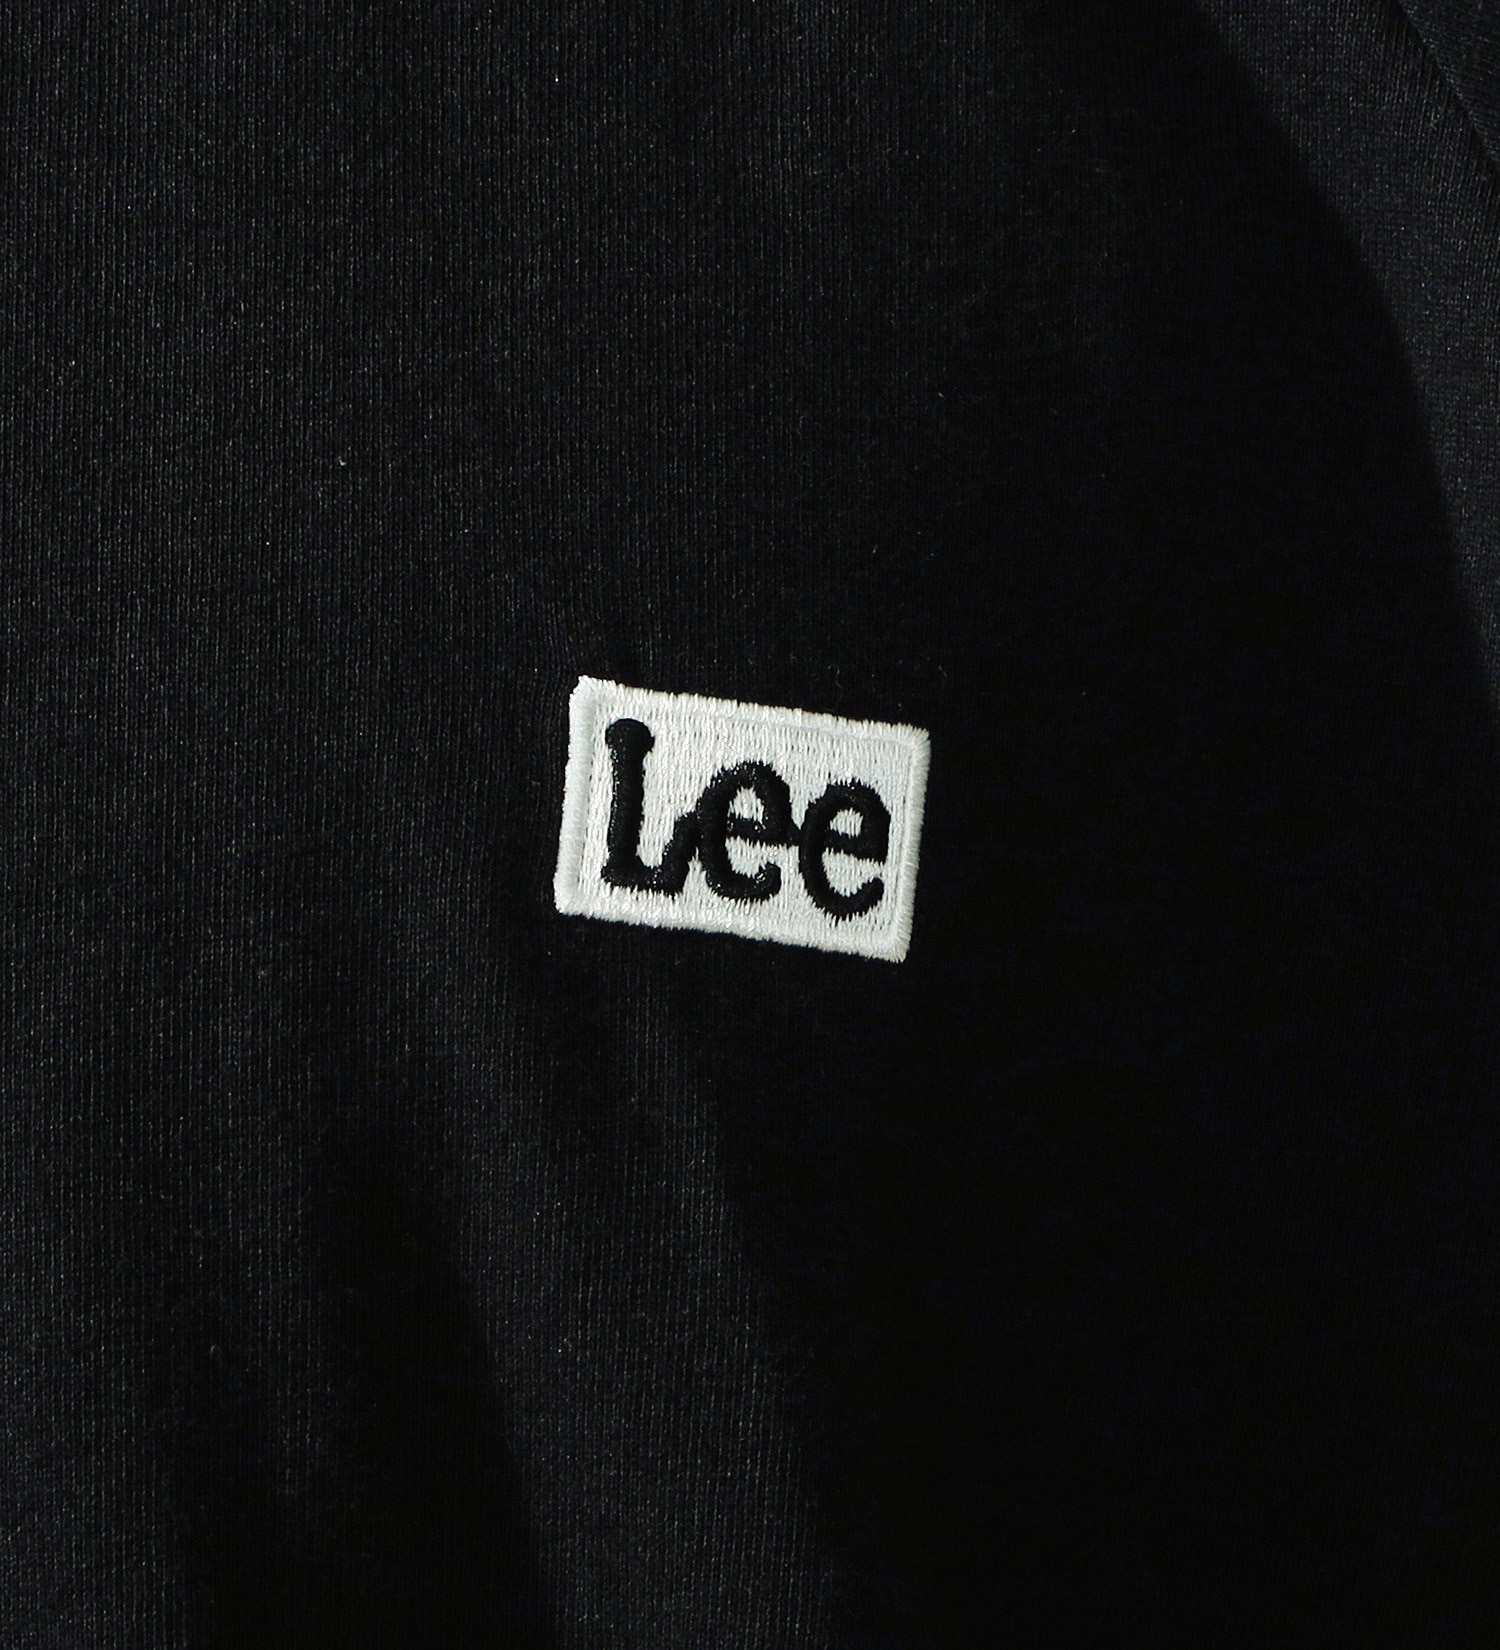 Lee(リー)の【GW SALE】Lee バックプリント ラグラン ロングスリーブTee|トップス/Tシャツ/カットソー/メンズ|ブラック